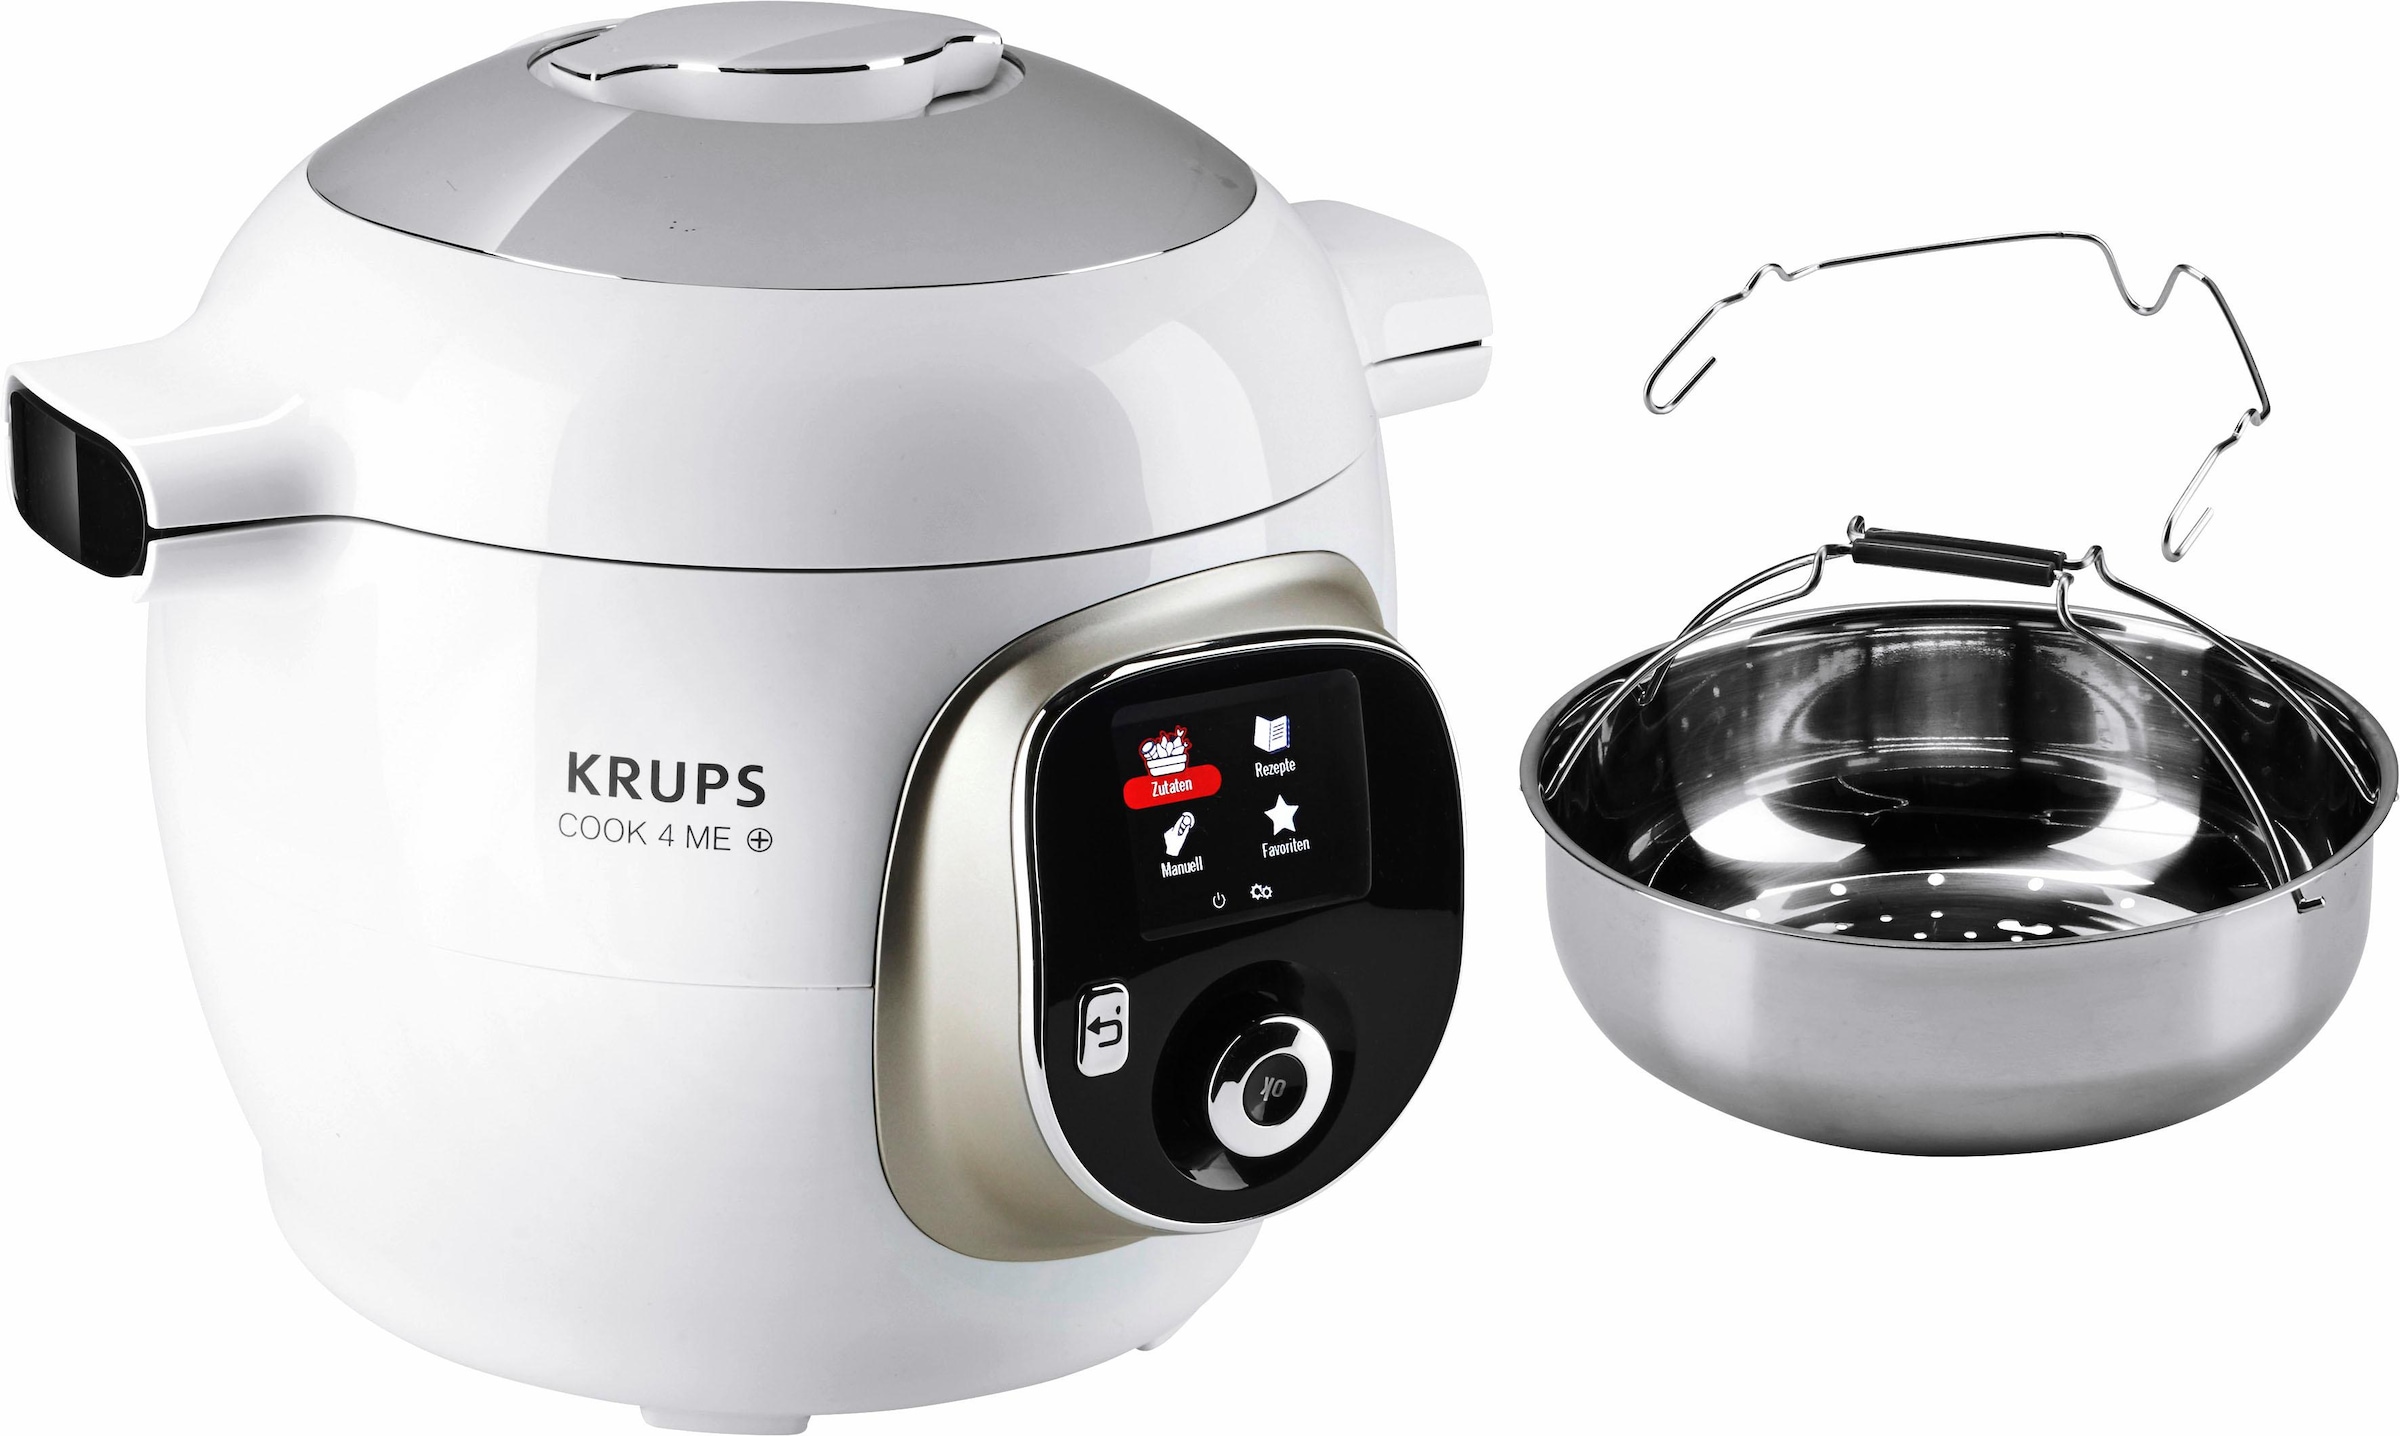 Krups Multikocher "CZ7101 Cook4Me +", 6L Kapazität, digitale Rezepte, Schnellkochtopf, Dampfgaren, Anbraten